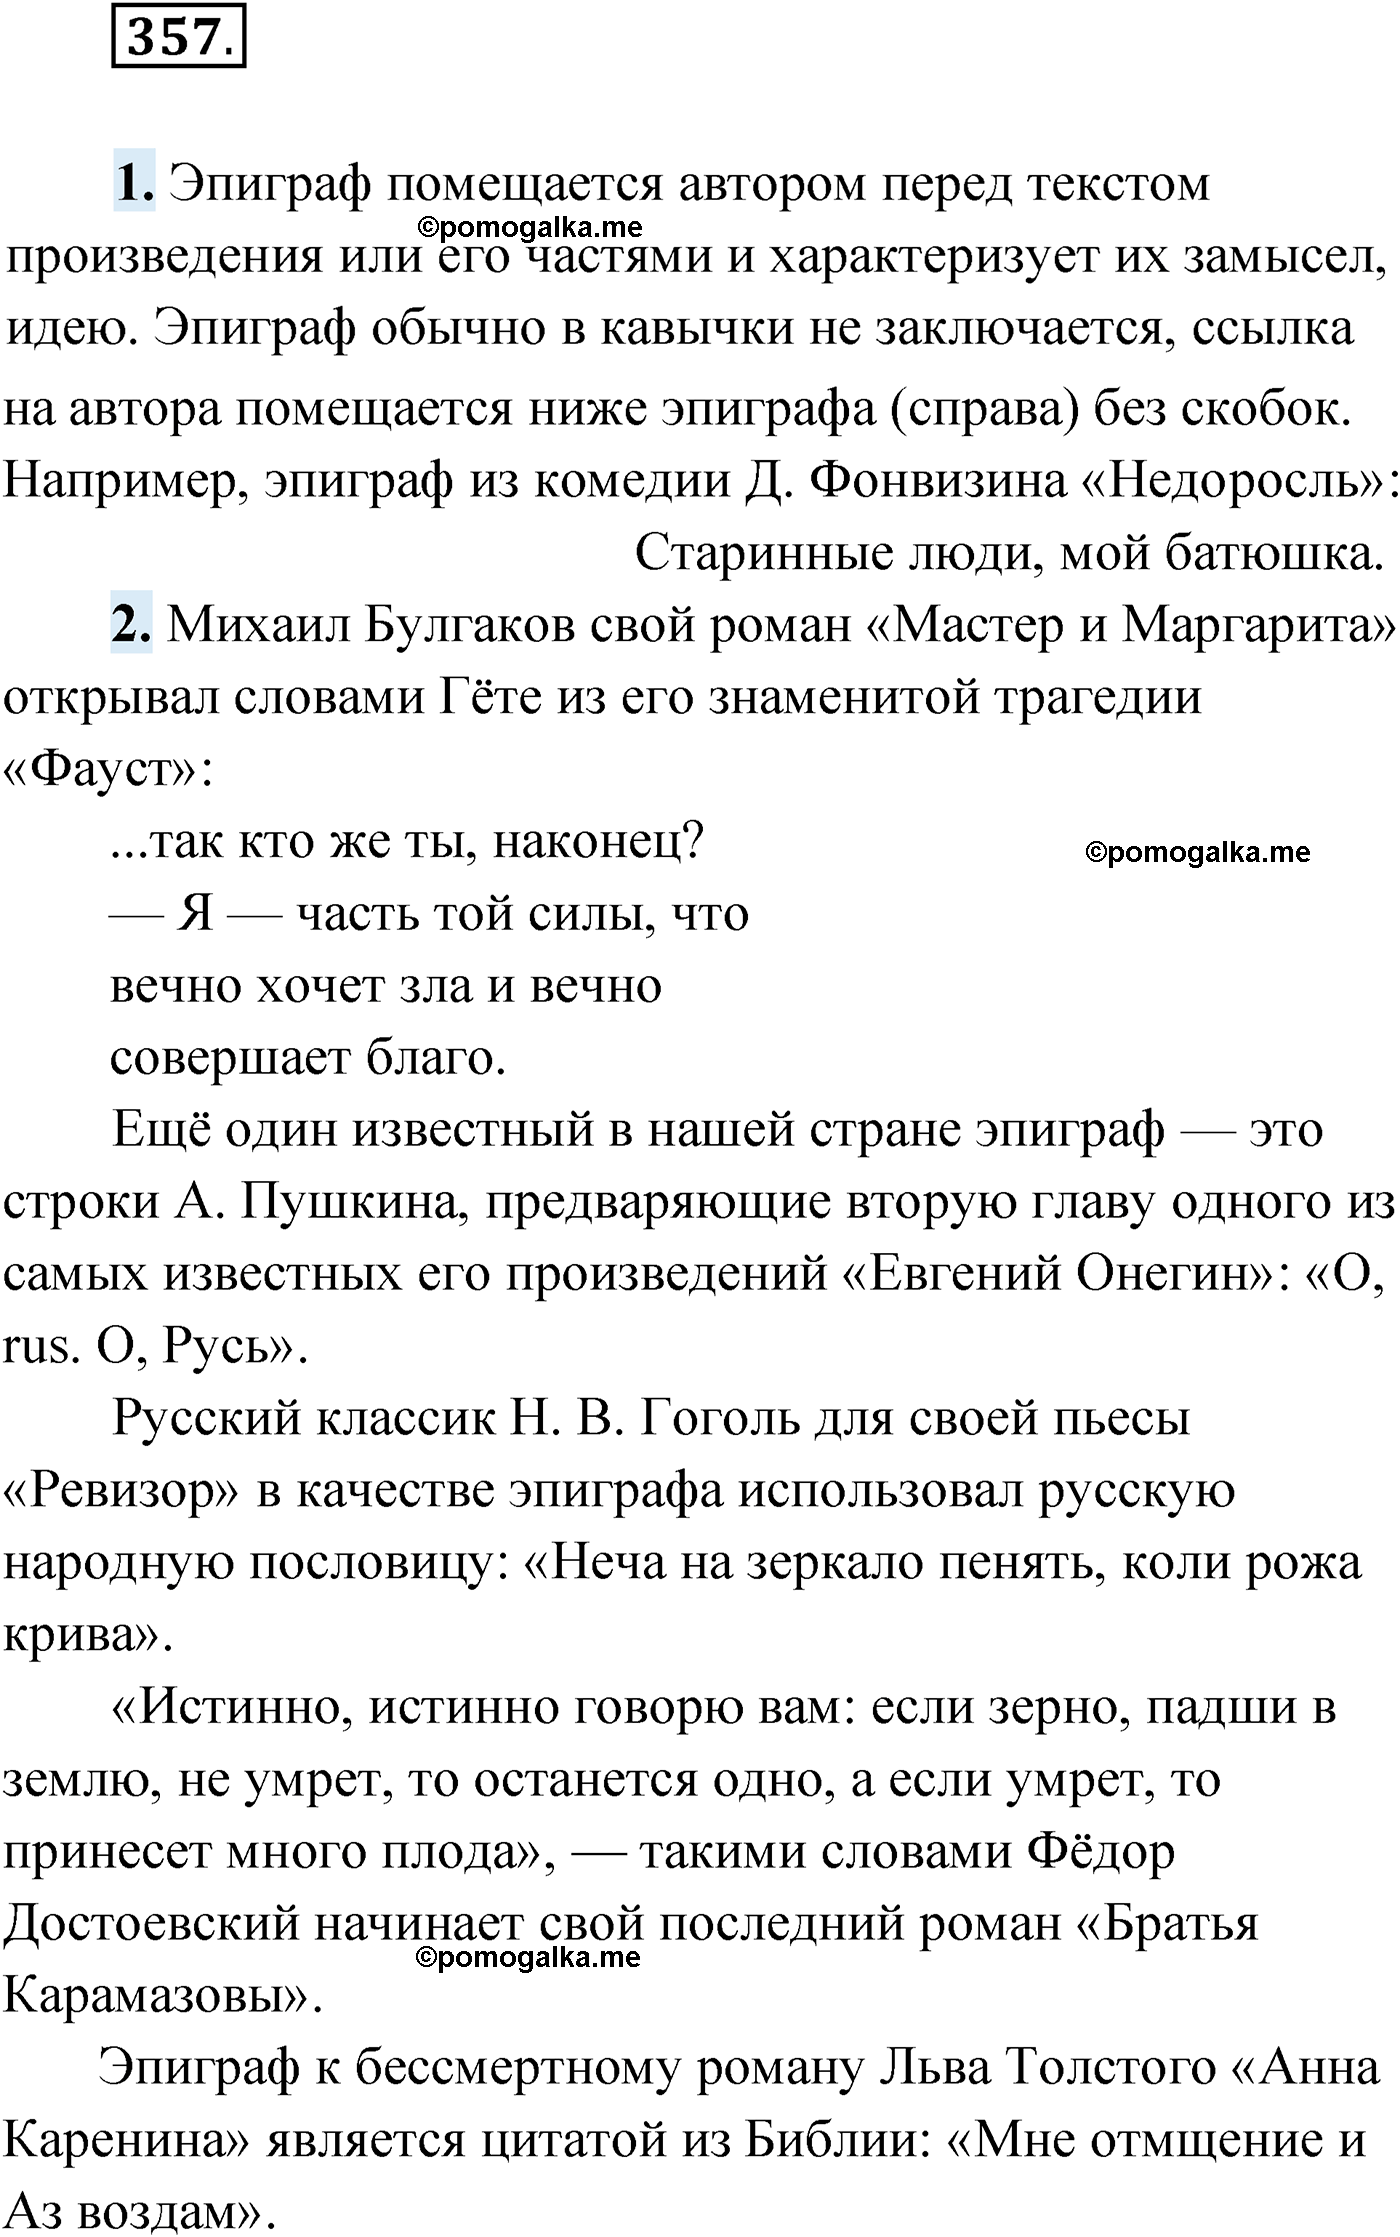 упражнение №357 русский язык 9 класс Мурина 2019 год